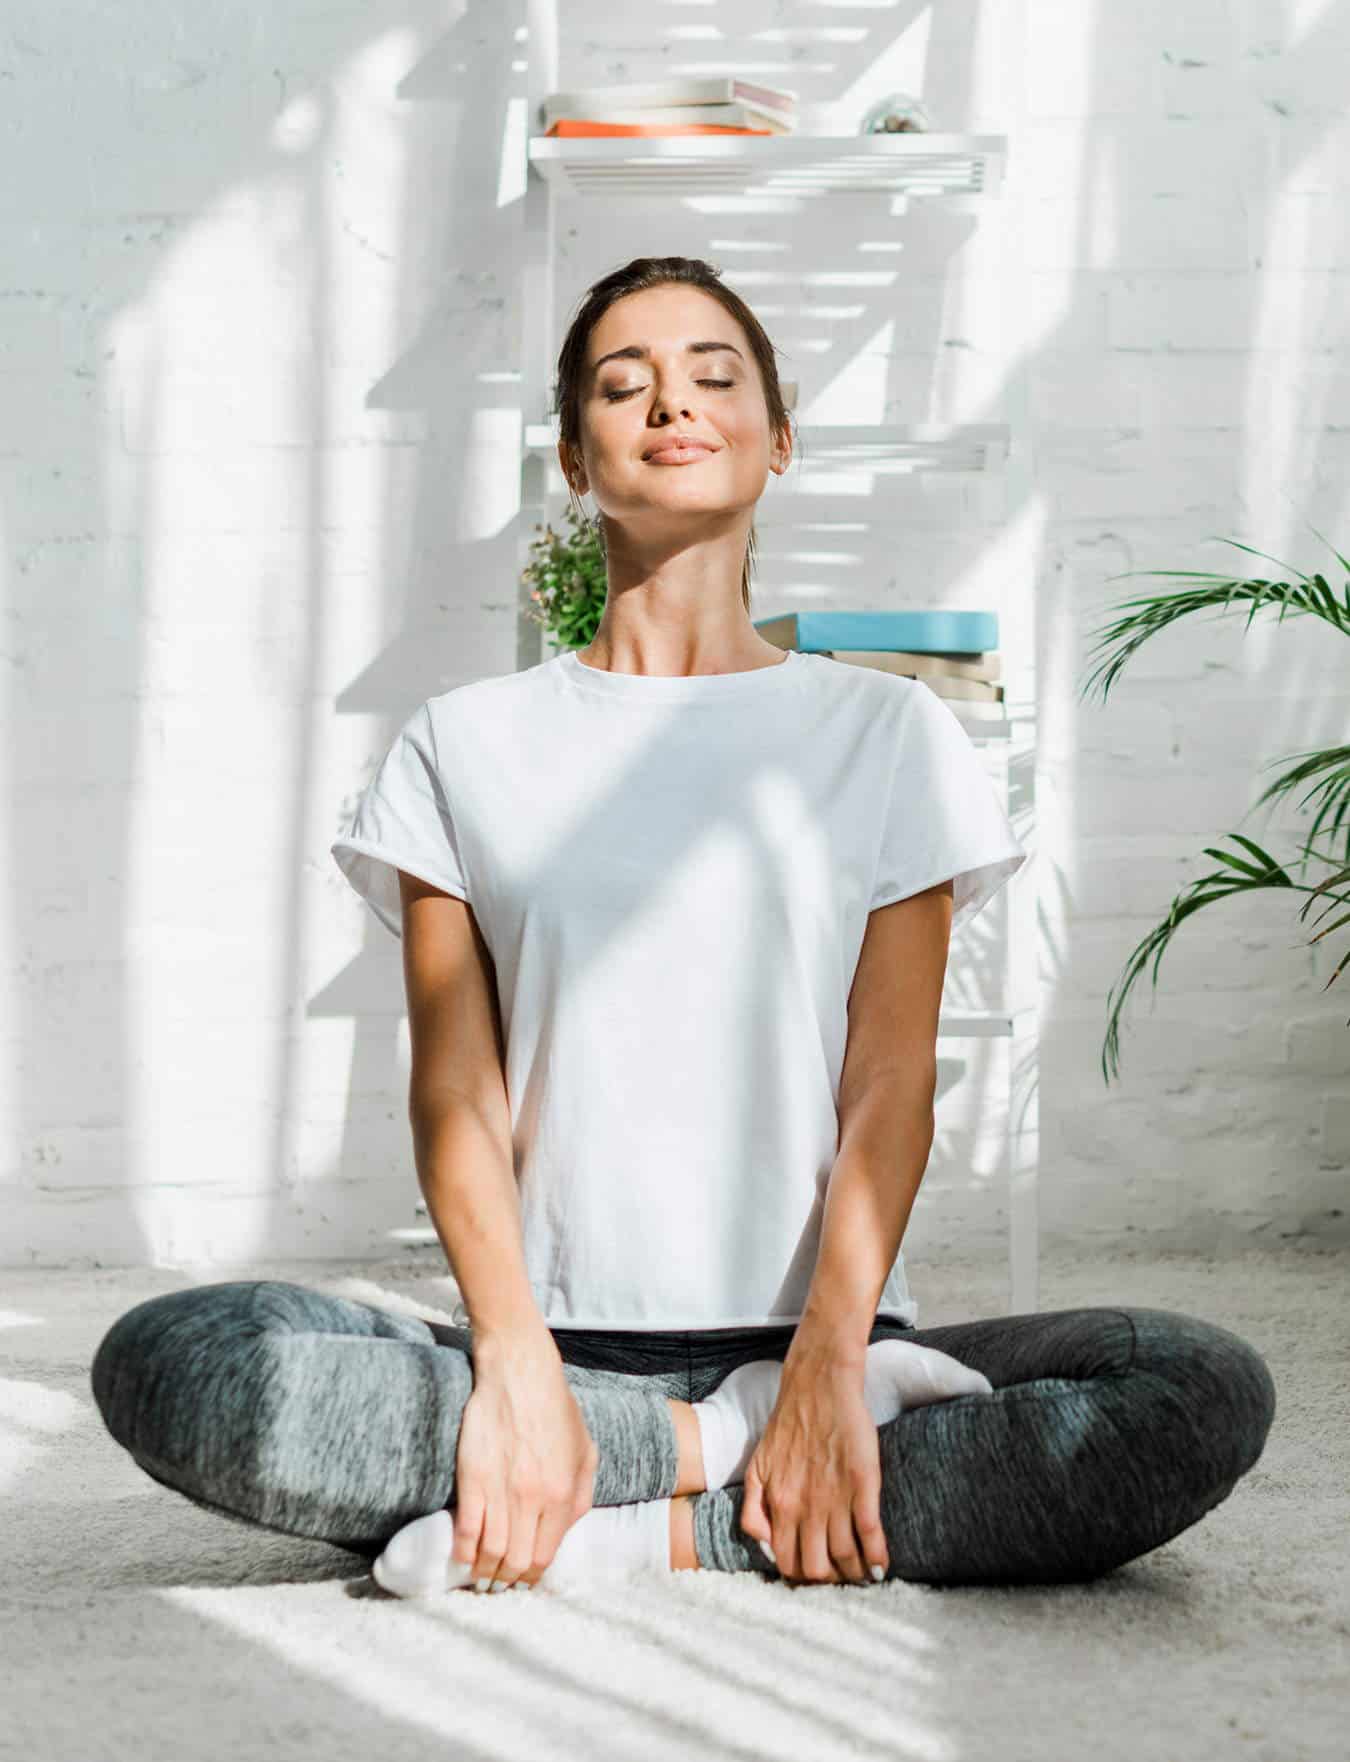 Woman sitting in yoga pose